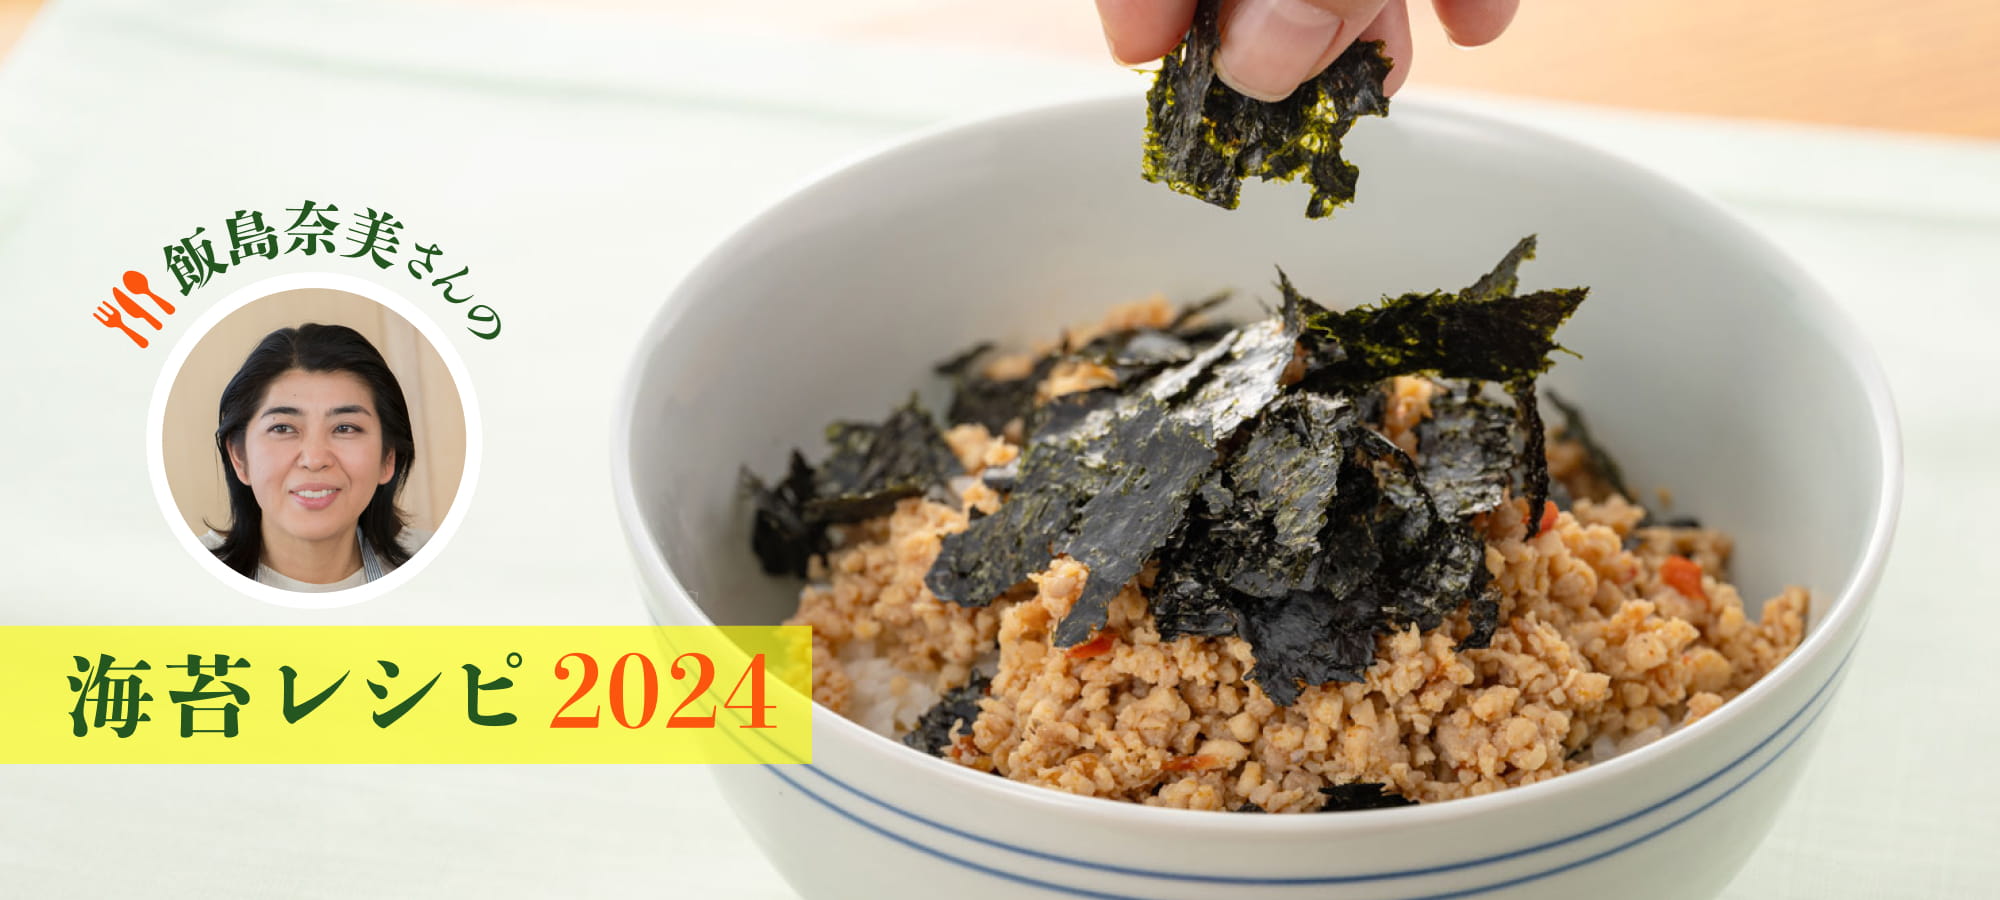 飯島奈美さんの海苔レシピ 2021ごはんスペシャル